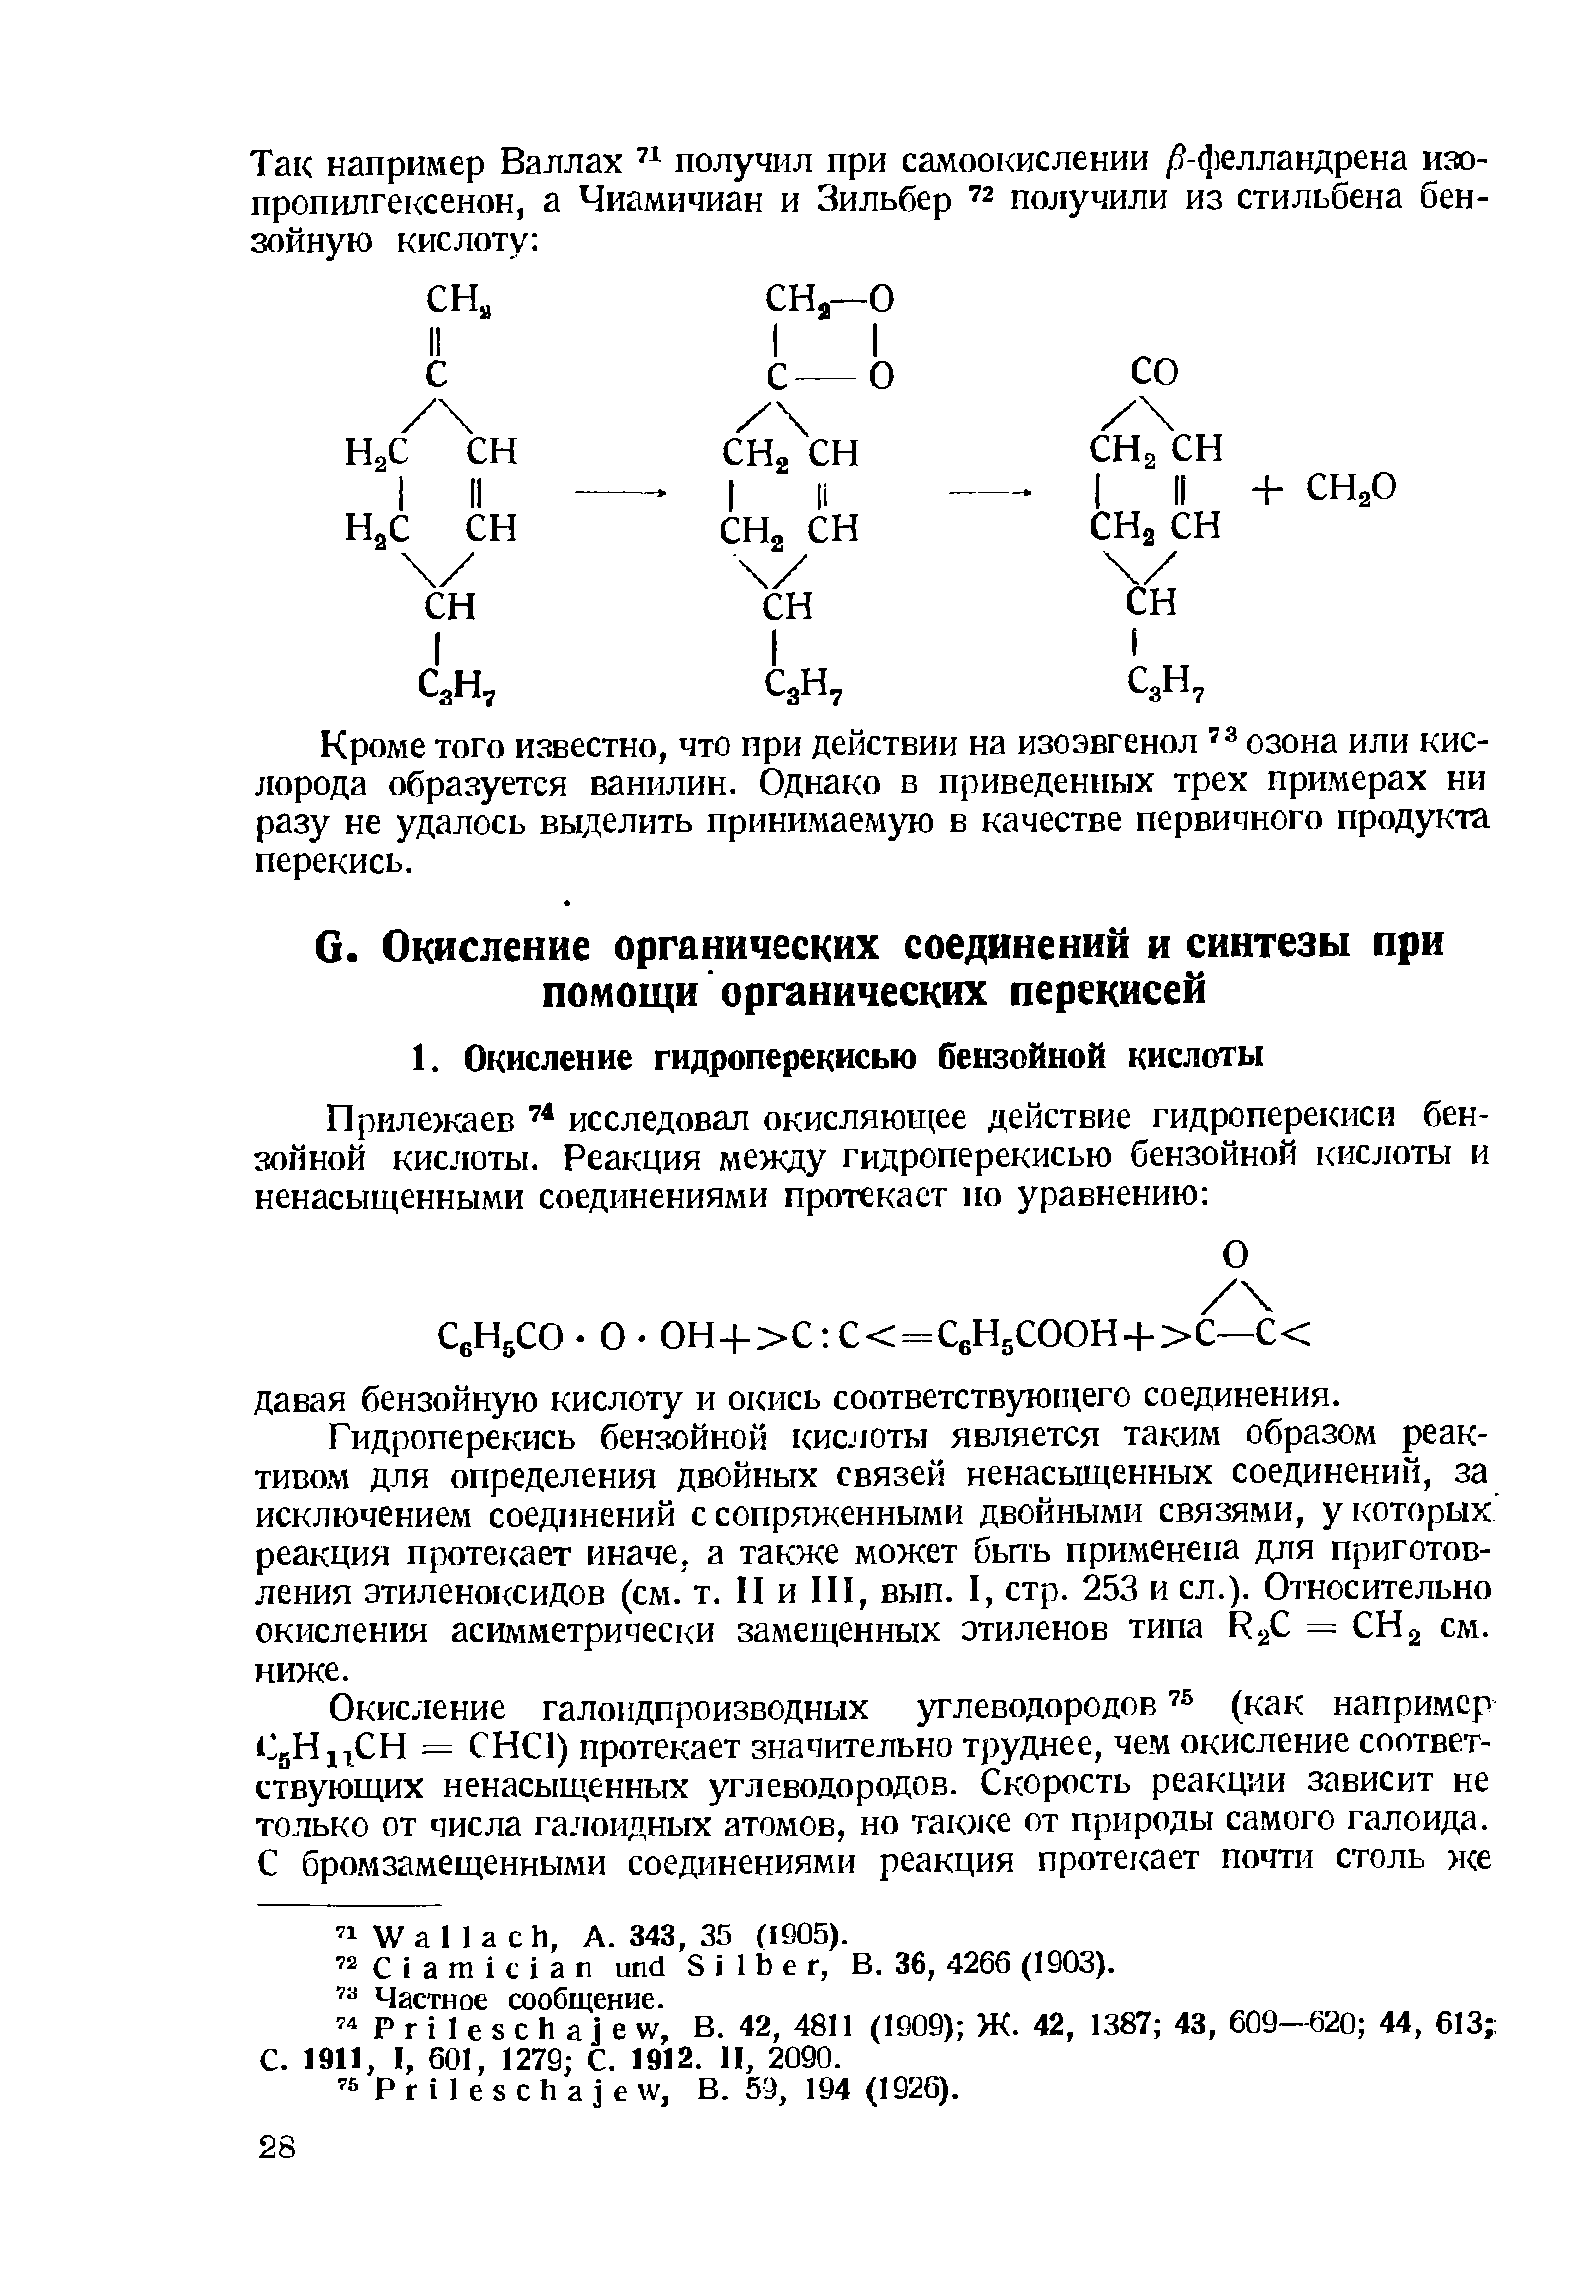 Гидроперекись бензойной кислоты является таким образом реактивом для определения двойных связей ненасьш(енных соединений, за исключением соединений с сопряженными двойными связями, у которых реакция протекает иначе, а также может бьпъ применена для приготовления этиленоксидов (см. т. П и П1, вып. I, стр. 253 и сл.). Относительно окисления асимметрически замещенных этиленов типа Rj = СНа см. ниже.